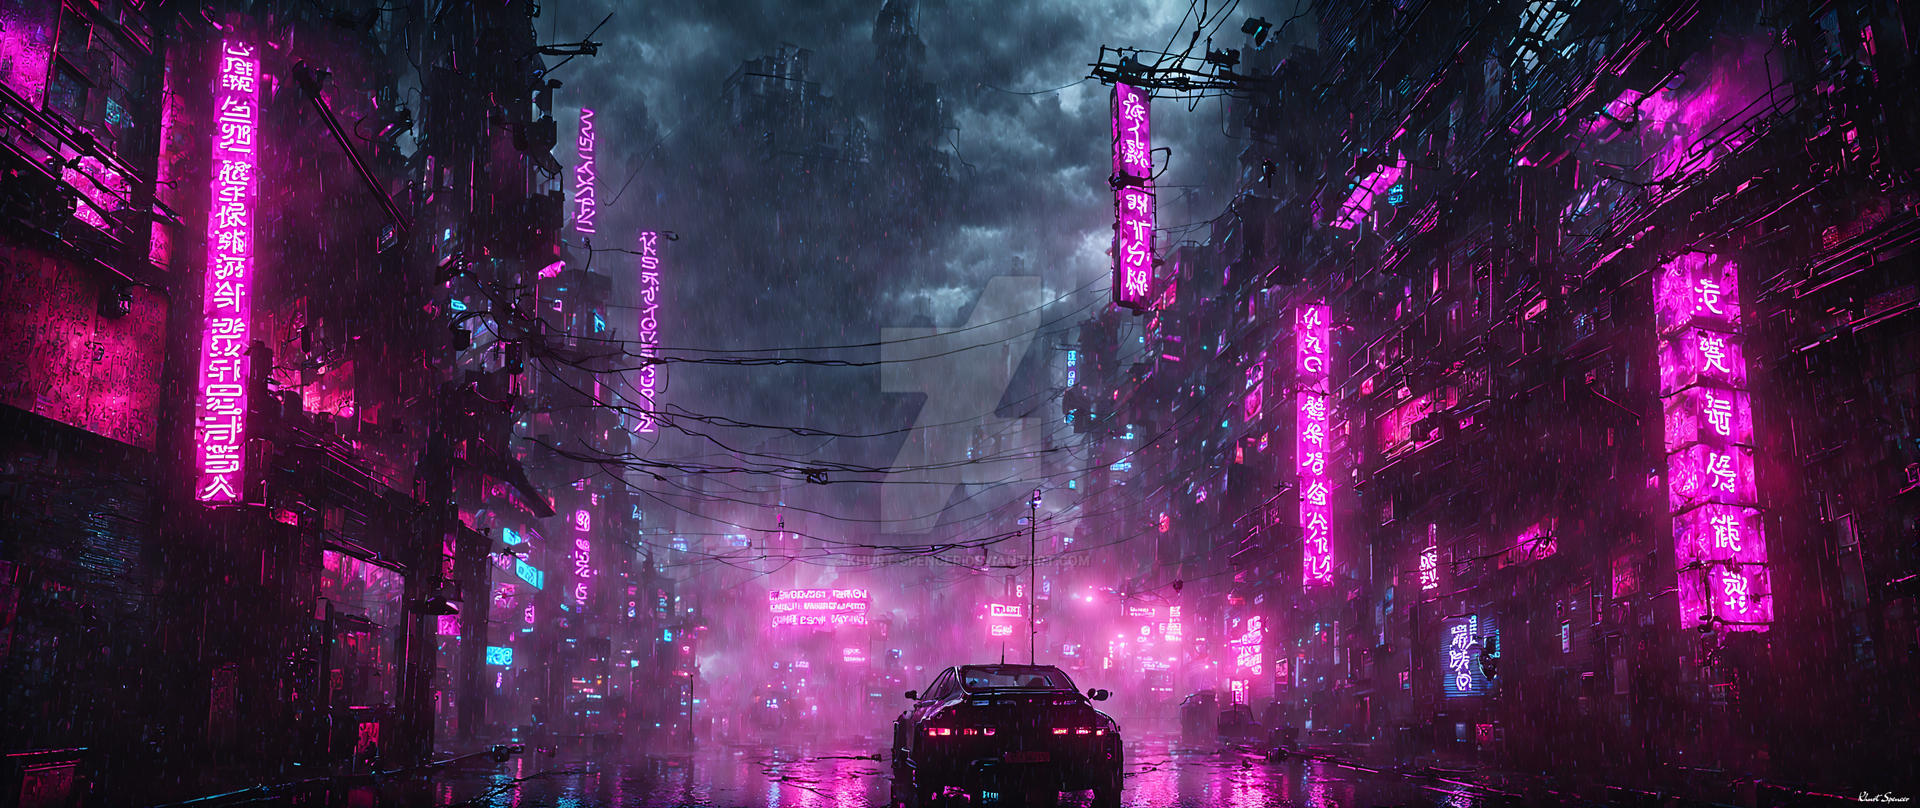 Cyberpunk city vertical wallpaper by Coolarts223 on DeviantArt